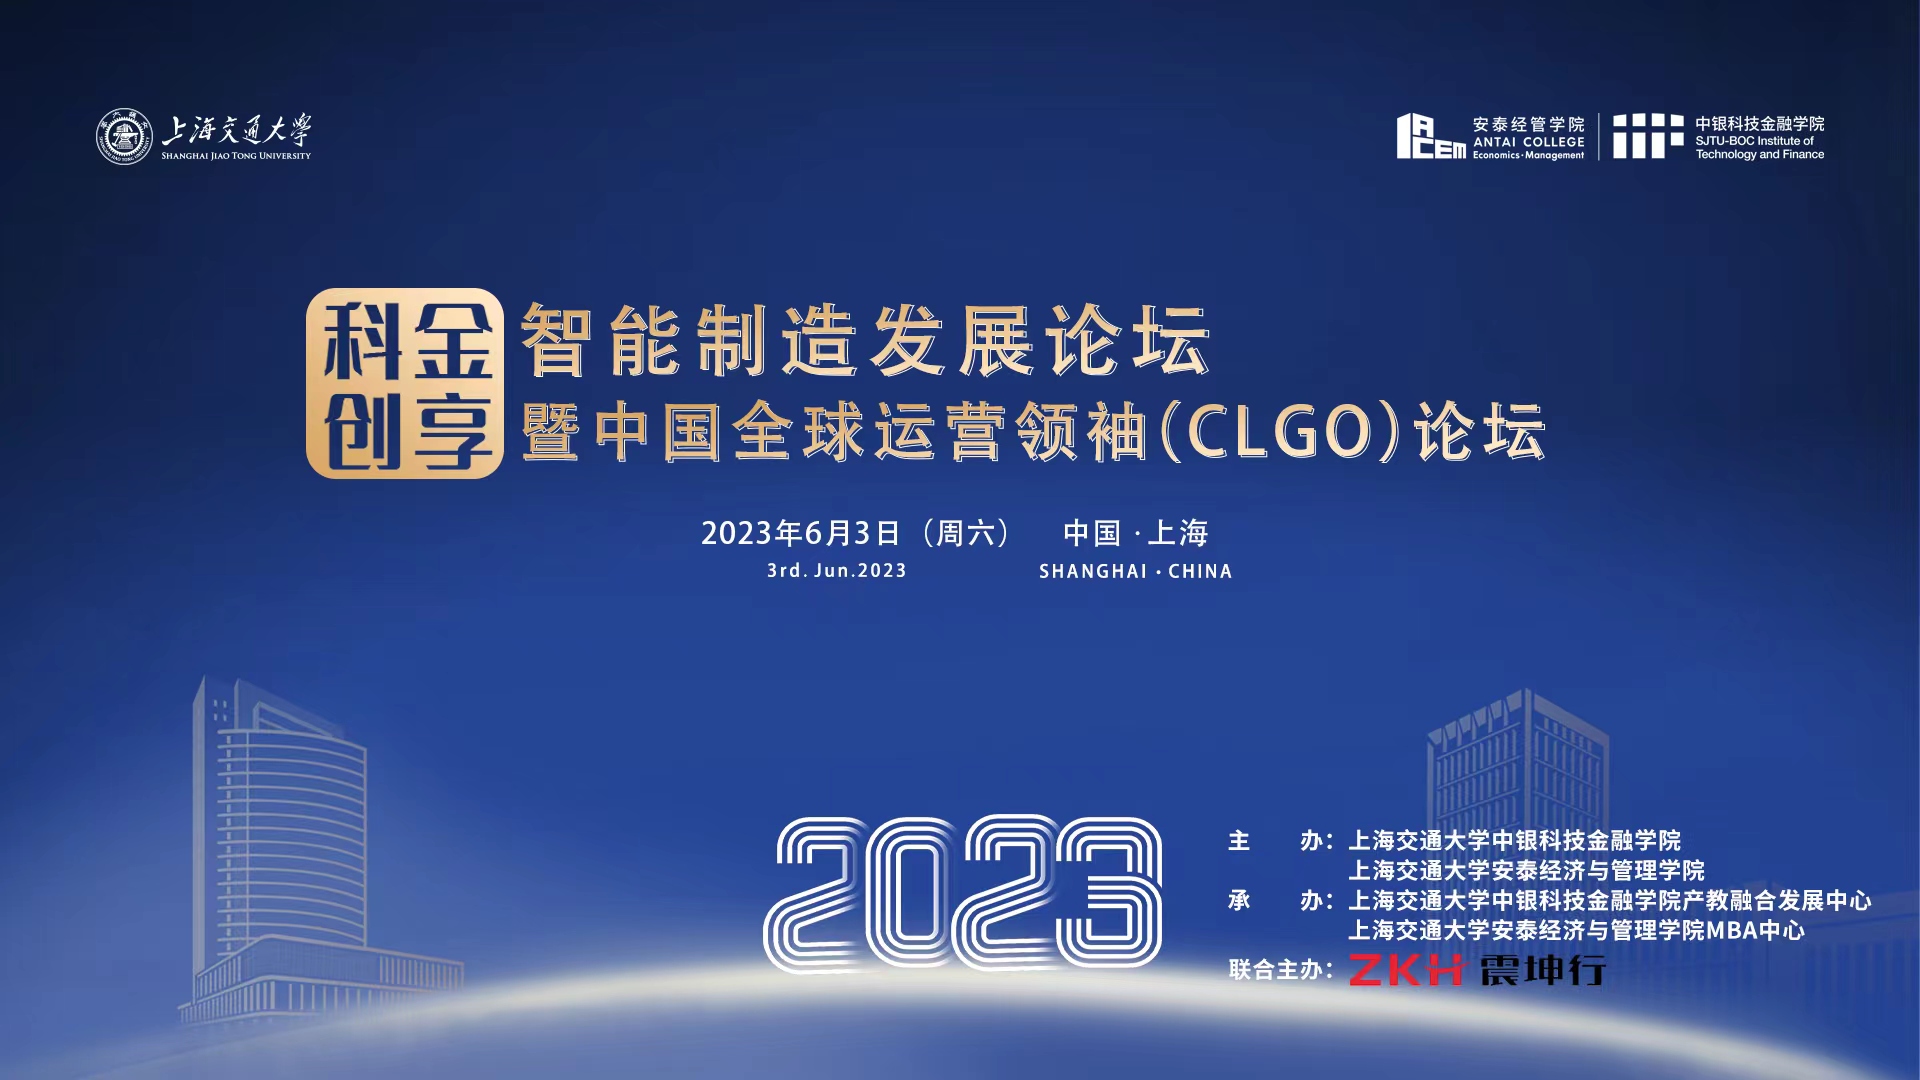 上海交通大学“科金创享”智能制造发展论坛暨中国全球运营领袖(CLGO)论坛